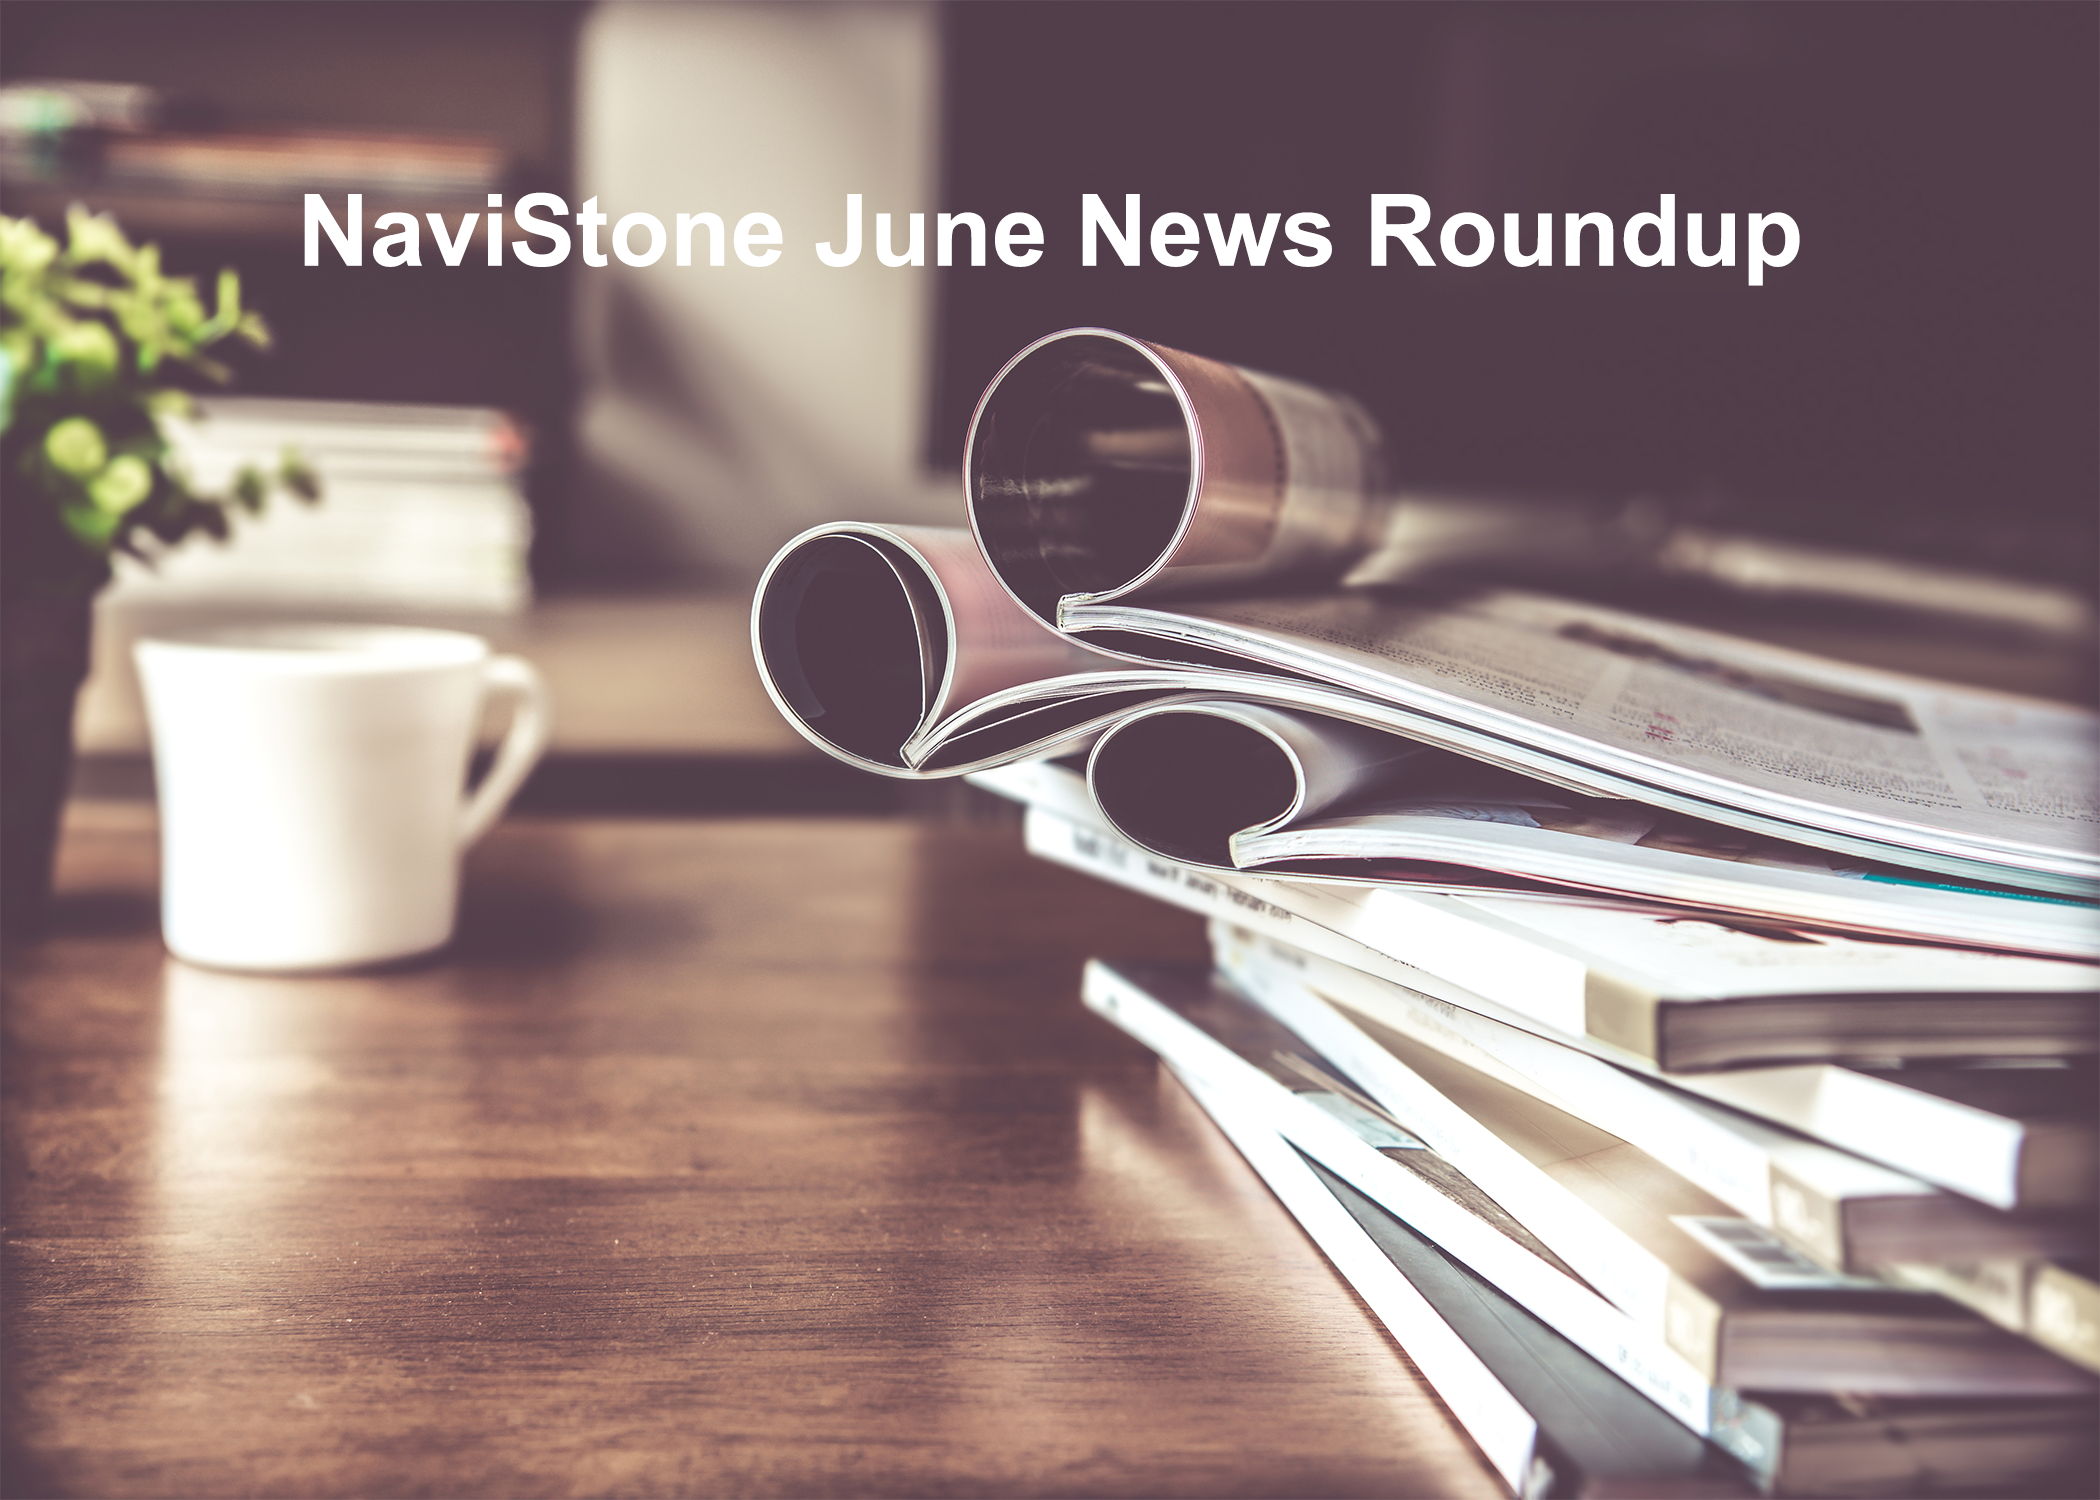 NaviStone June News Roundup 2020